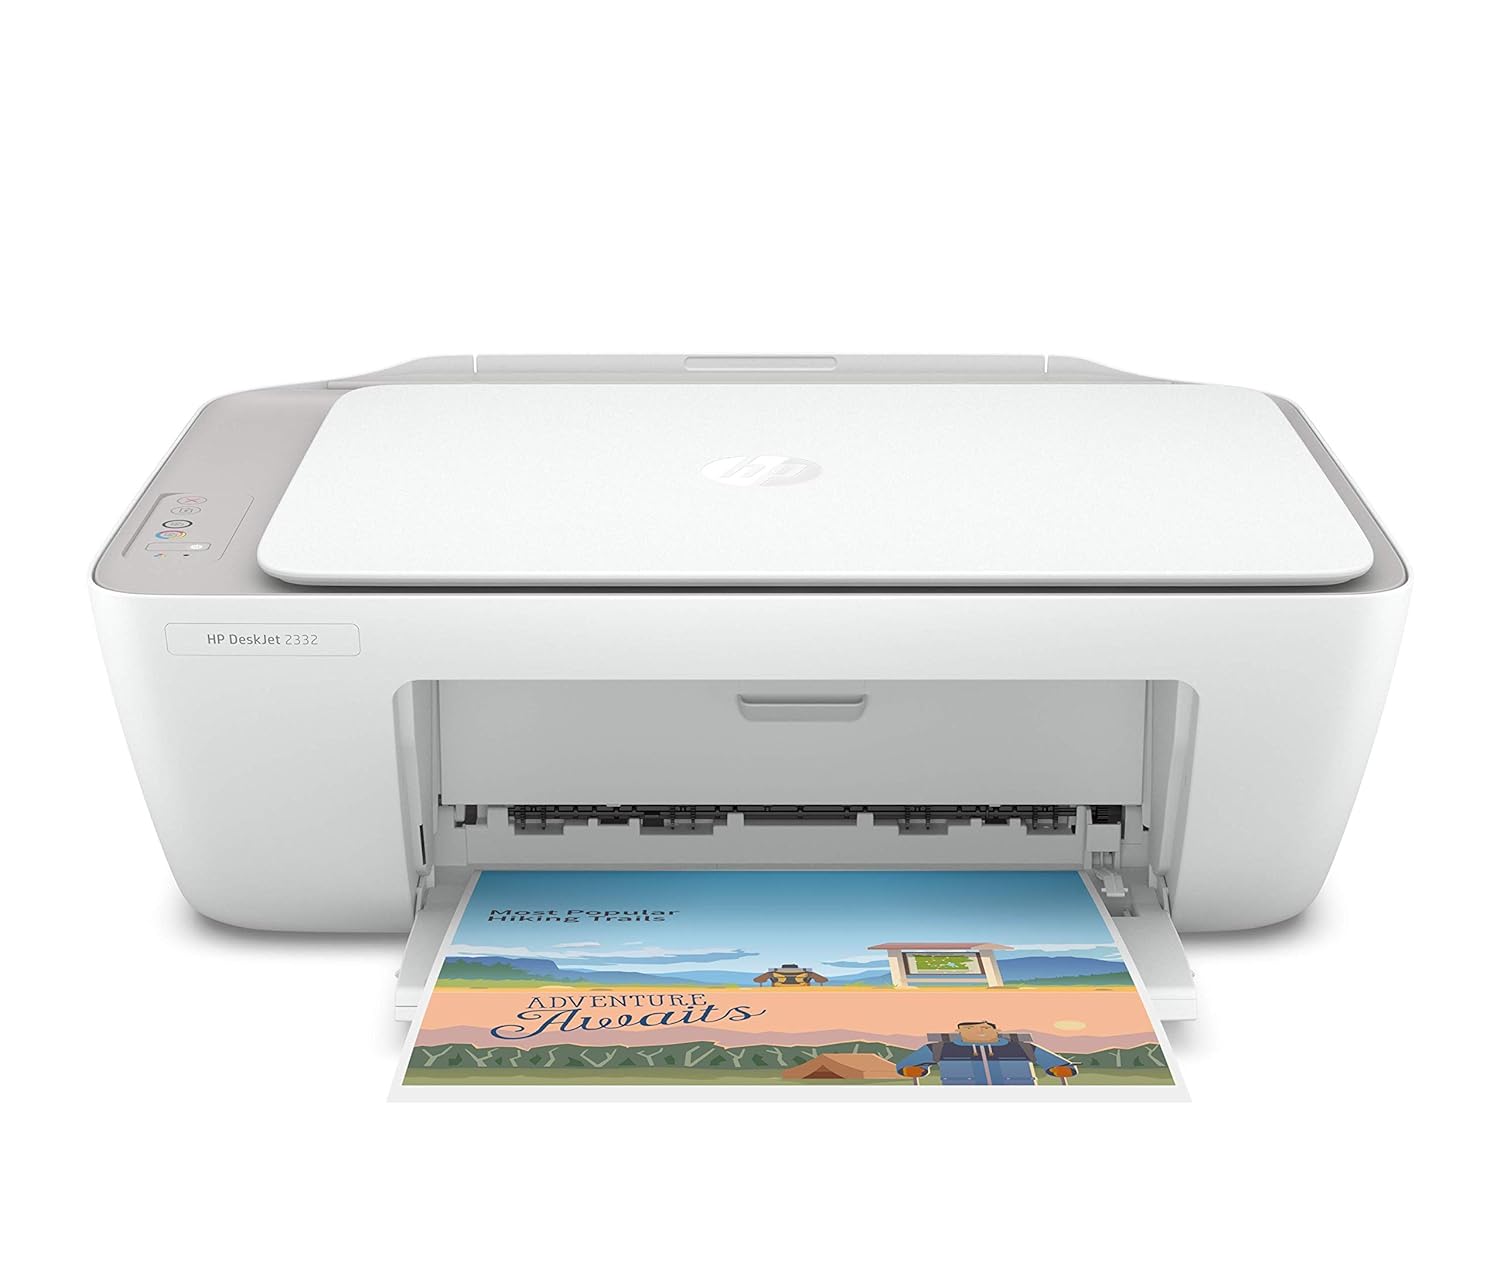 HP DeskJet 2332 All-in-One Printer, Print, Copy, Scan